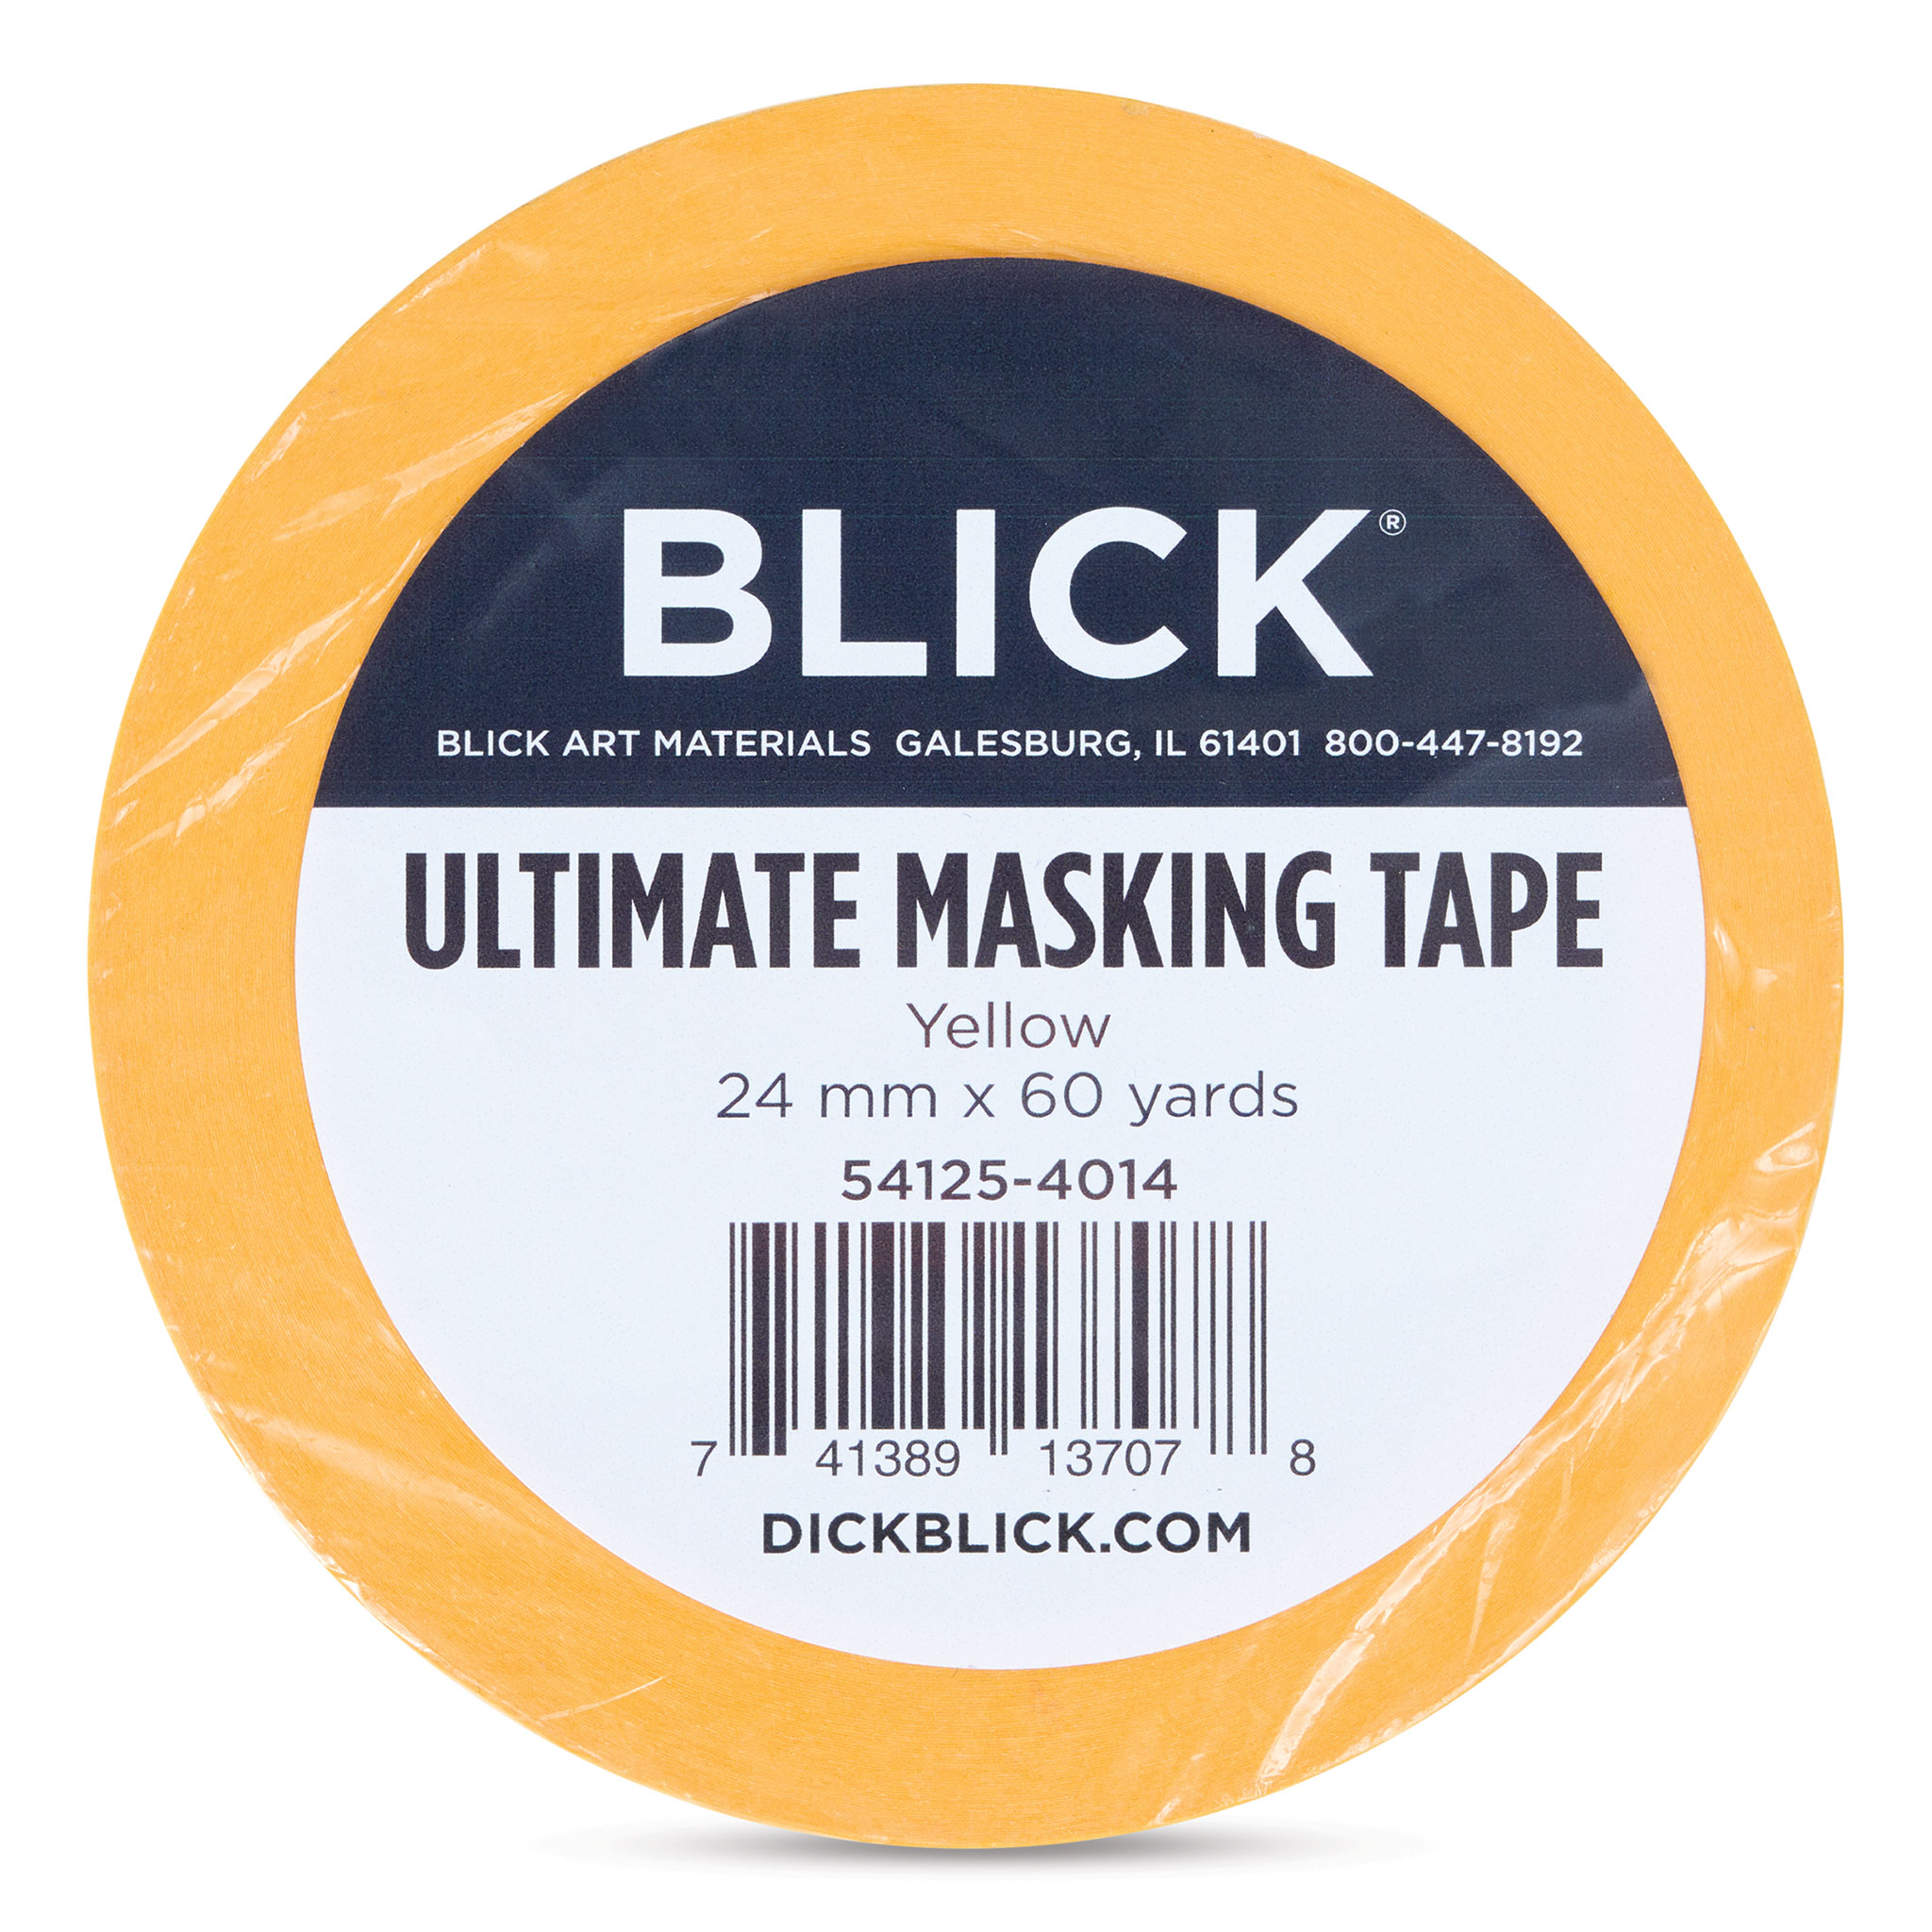 Pro Art Masking Tape 1/2 x 60yd, Artist Tape, Art Tape, White